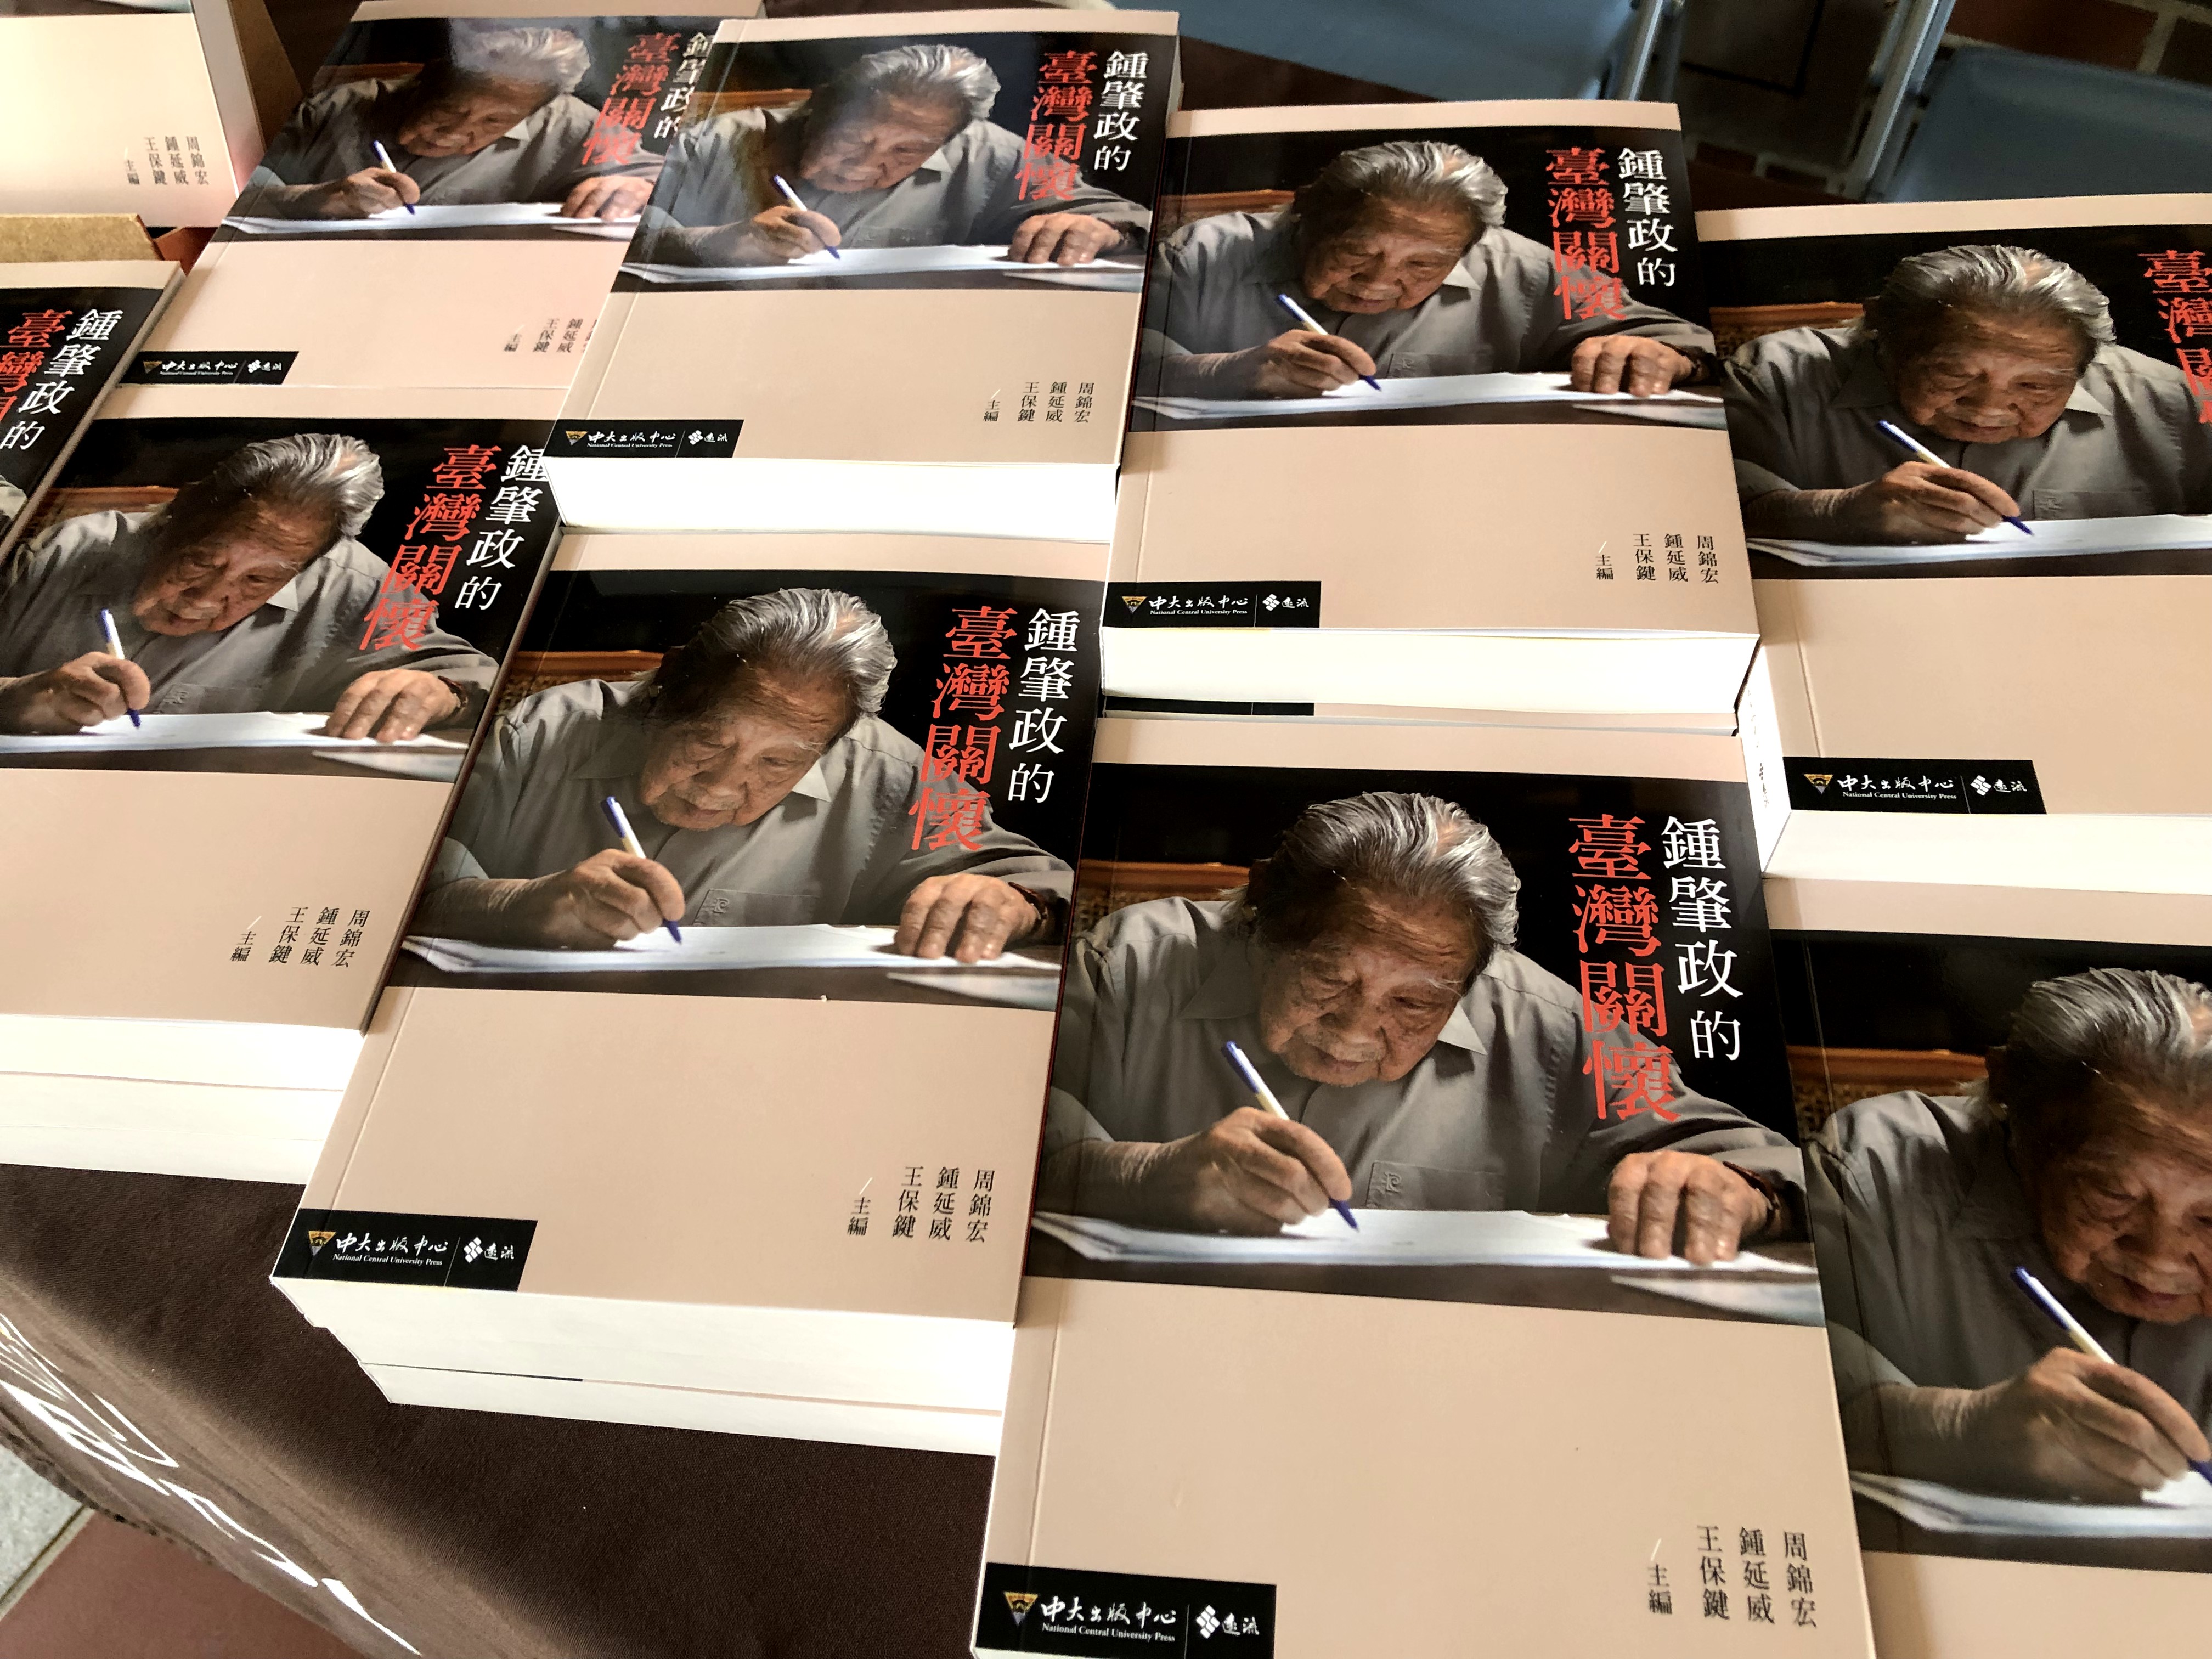 《鍾肇政的臺灣關懷》以客家公共事務、族群關懷、客家文學及臺灣文學等跨域視角再現鍾老的一生。照片客家學院提供。